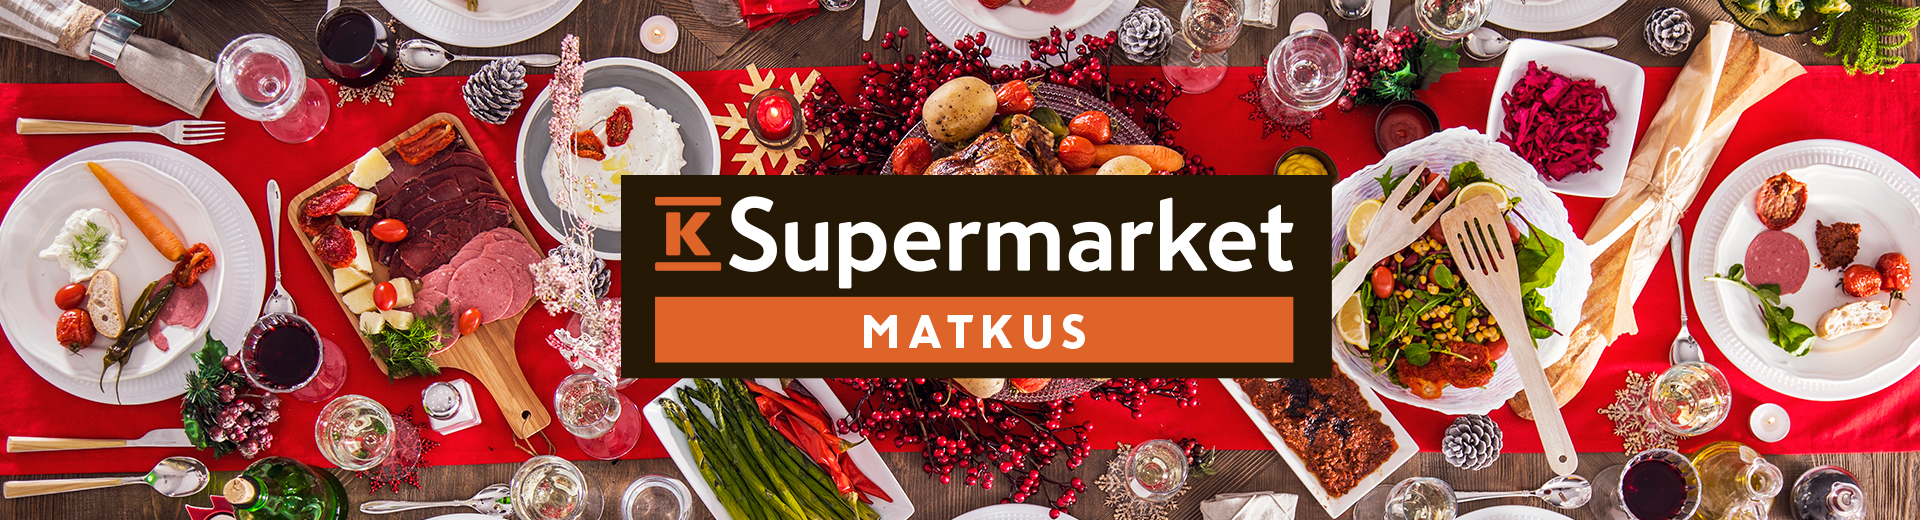 Osallistu K-supermarket Matkuksen jouluarvontaan! - Savon Aallot